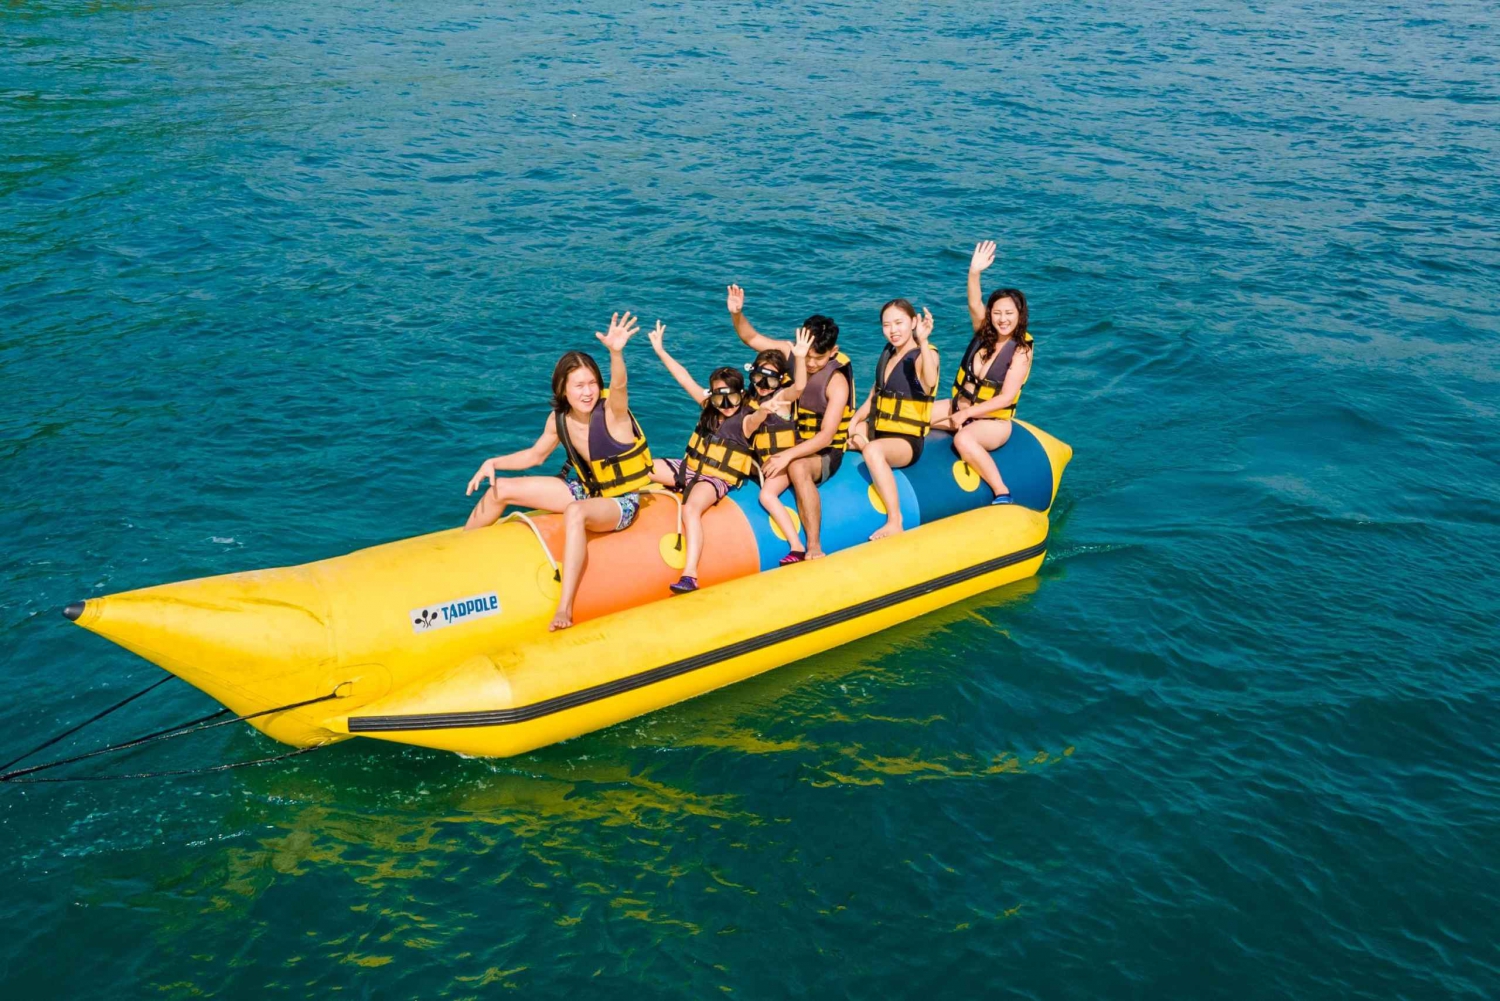 Phu Quoc: Jännittävä banaanivene, Tutustu 3 saareen Combo-kierros